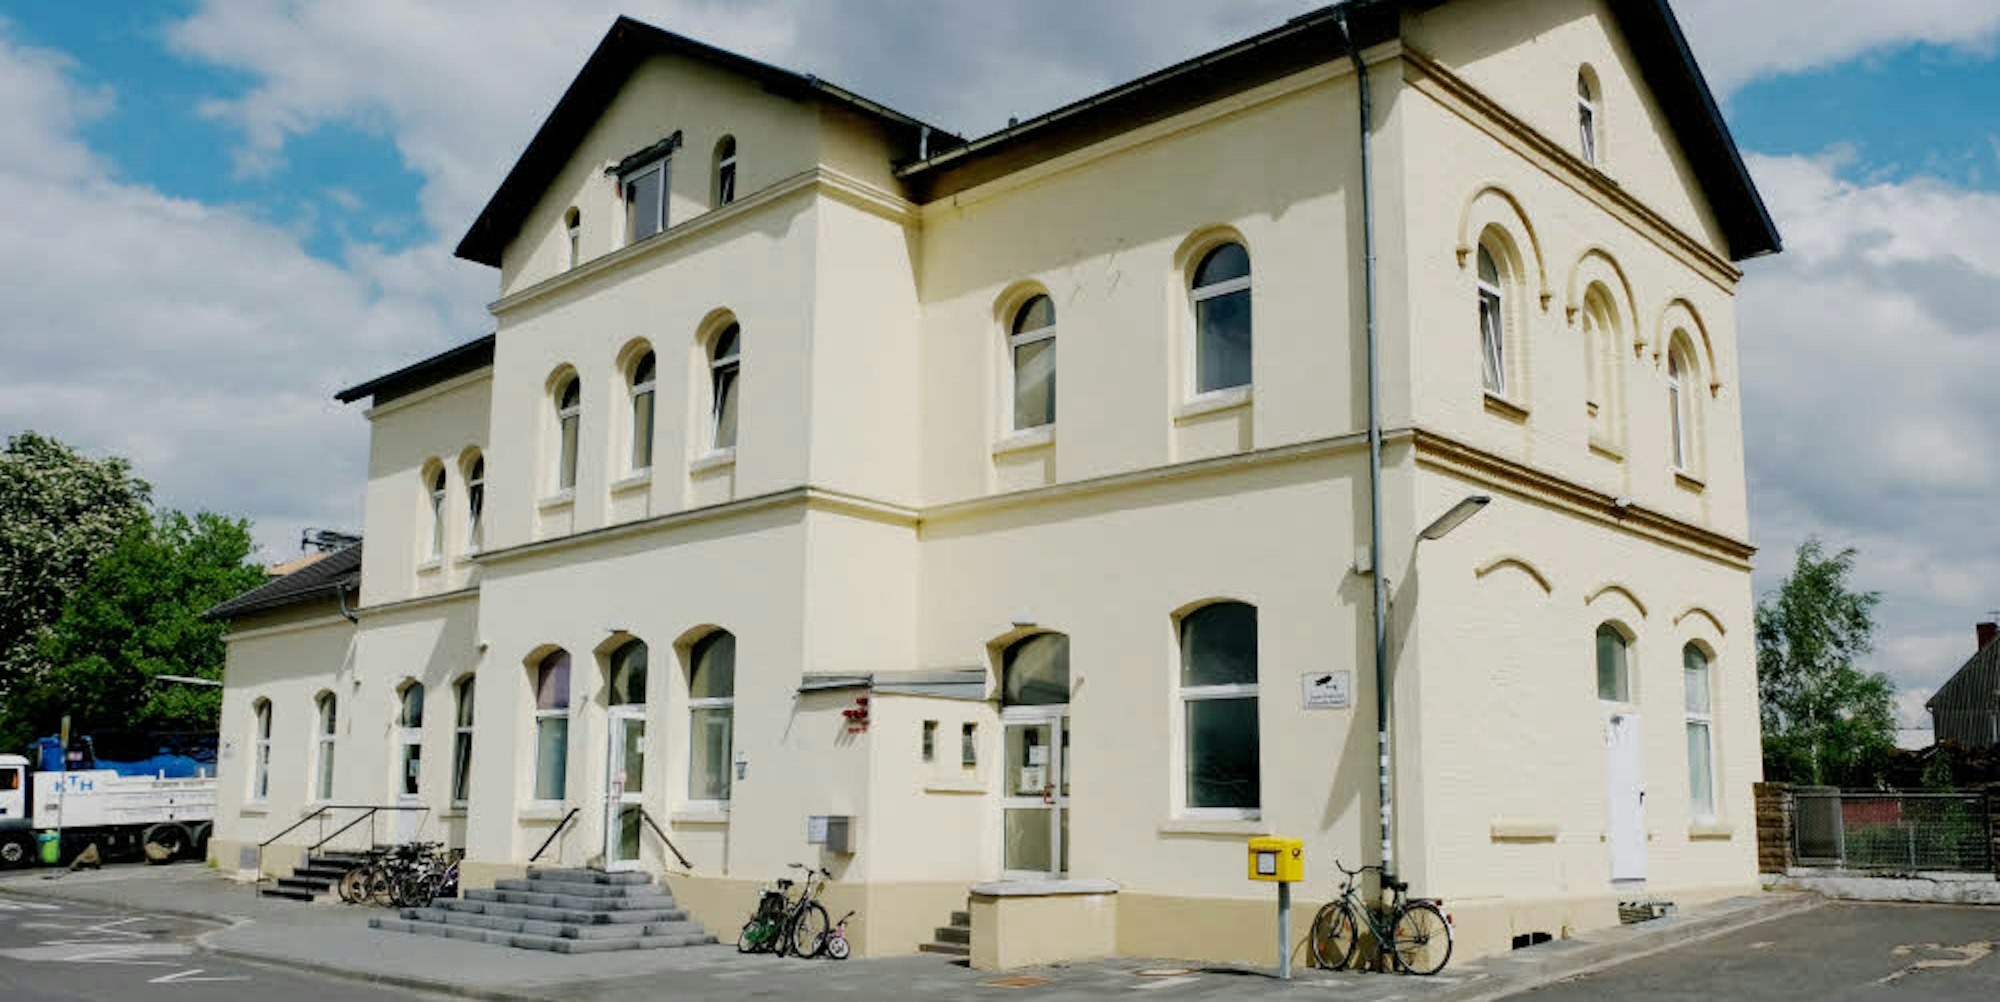 Das Bahnhofsgebäude Derkum wurde als Flüchtlingsunterkunft genutzt. (Archivfoto)